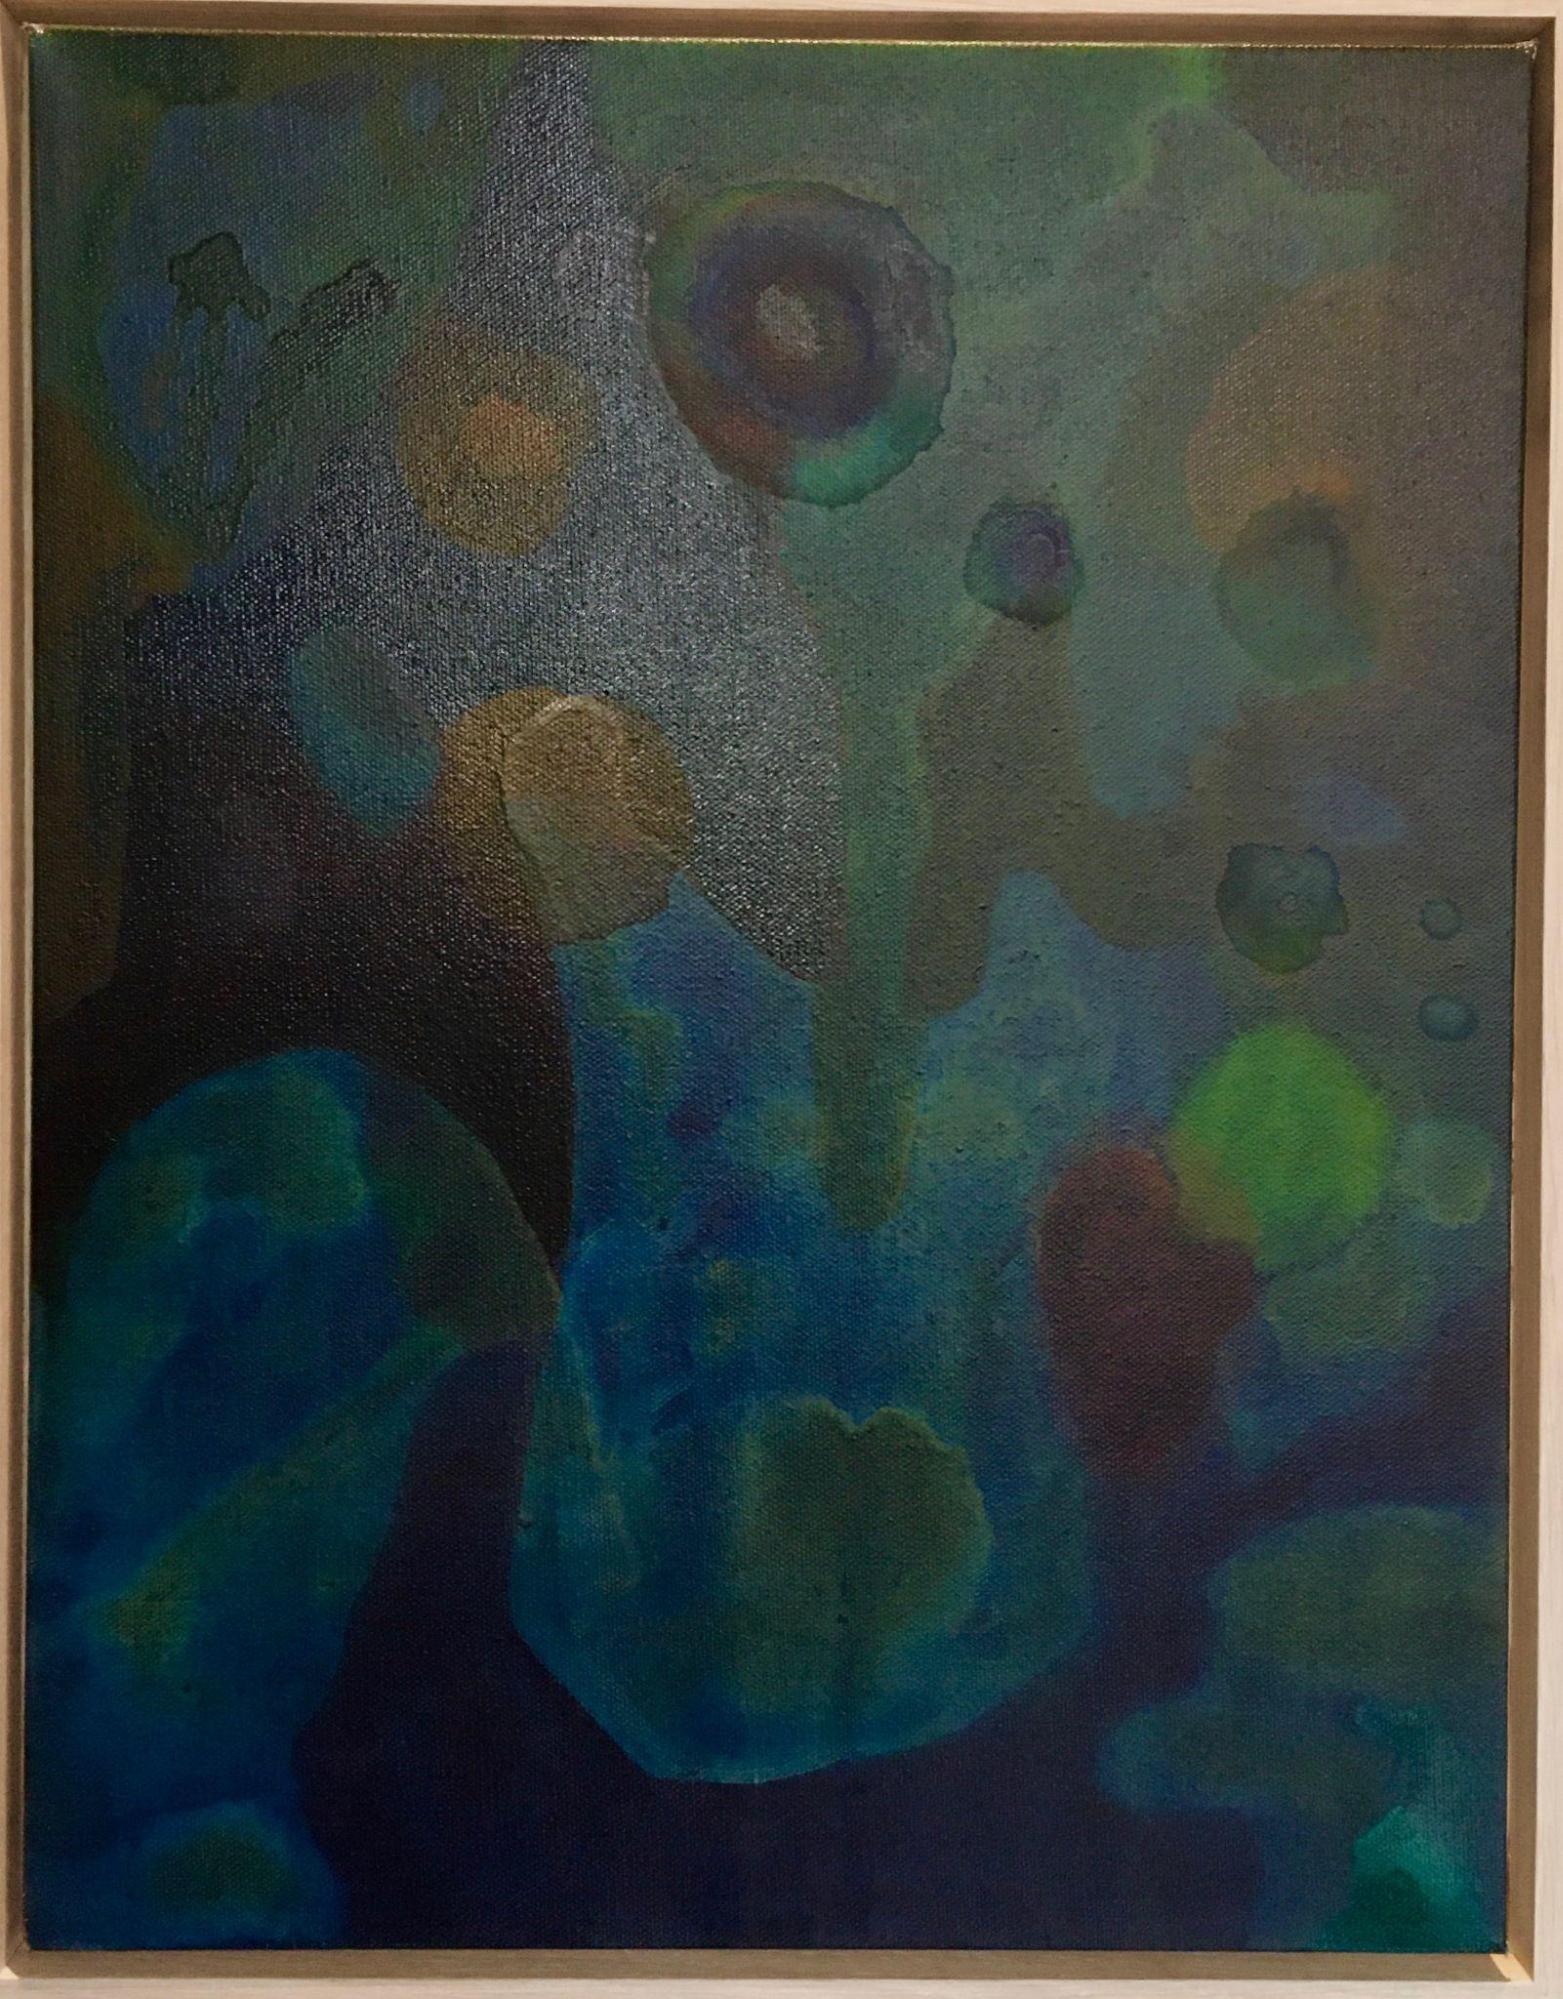 Feronia Weeps, Acrylic on canvas, 18” x 14”